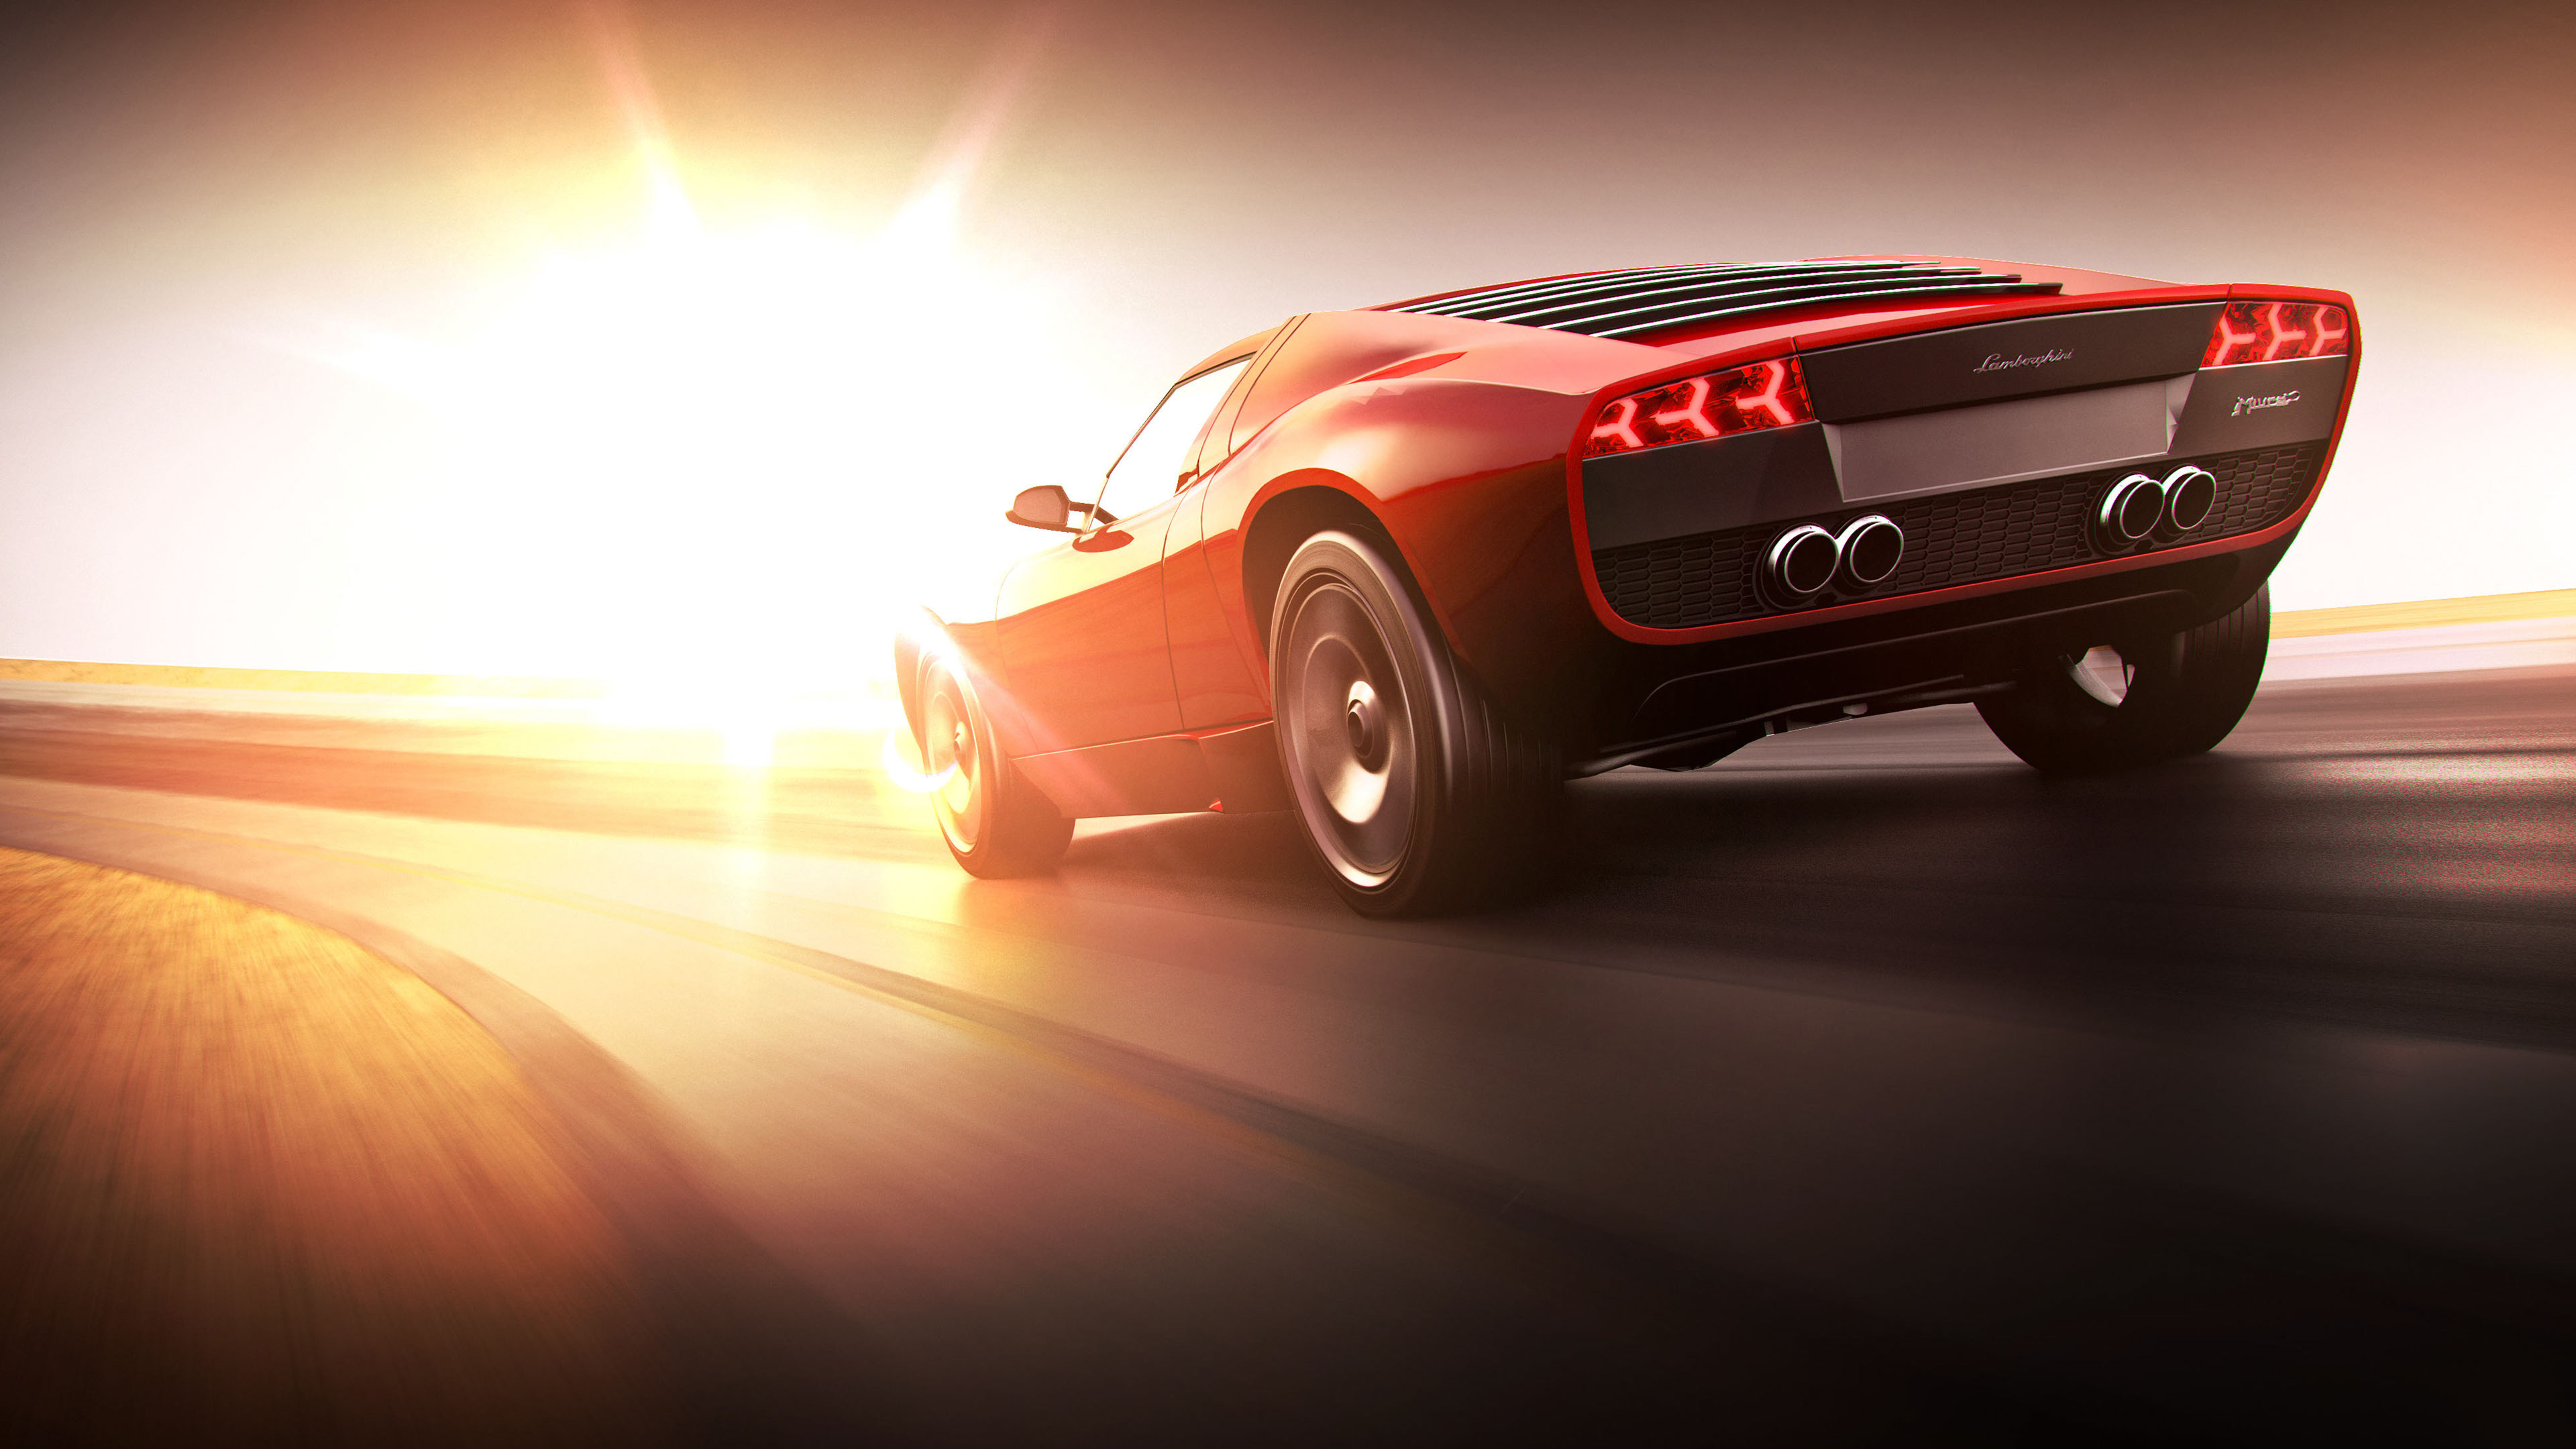 Wallpapers cars Lamborghini sun light on the desktop